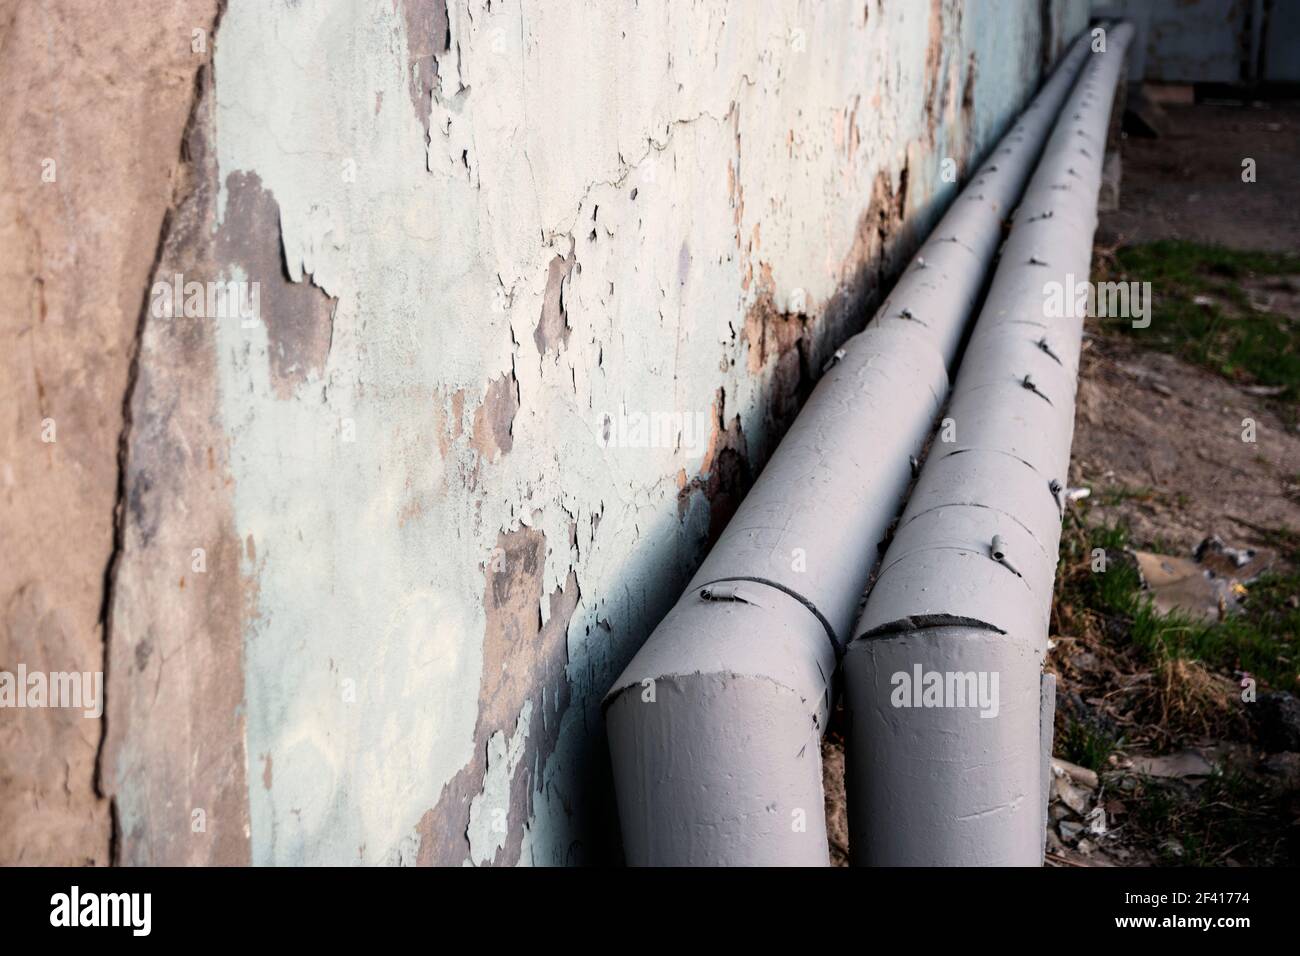 Wasserleitungen Mit Erneuter Wärmedämmung Und Raum Für Text Auf Der Grungy Wall. Wasserleitungen Mit Erneuter Wärmedämmung Stockfoto